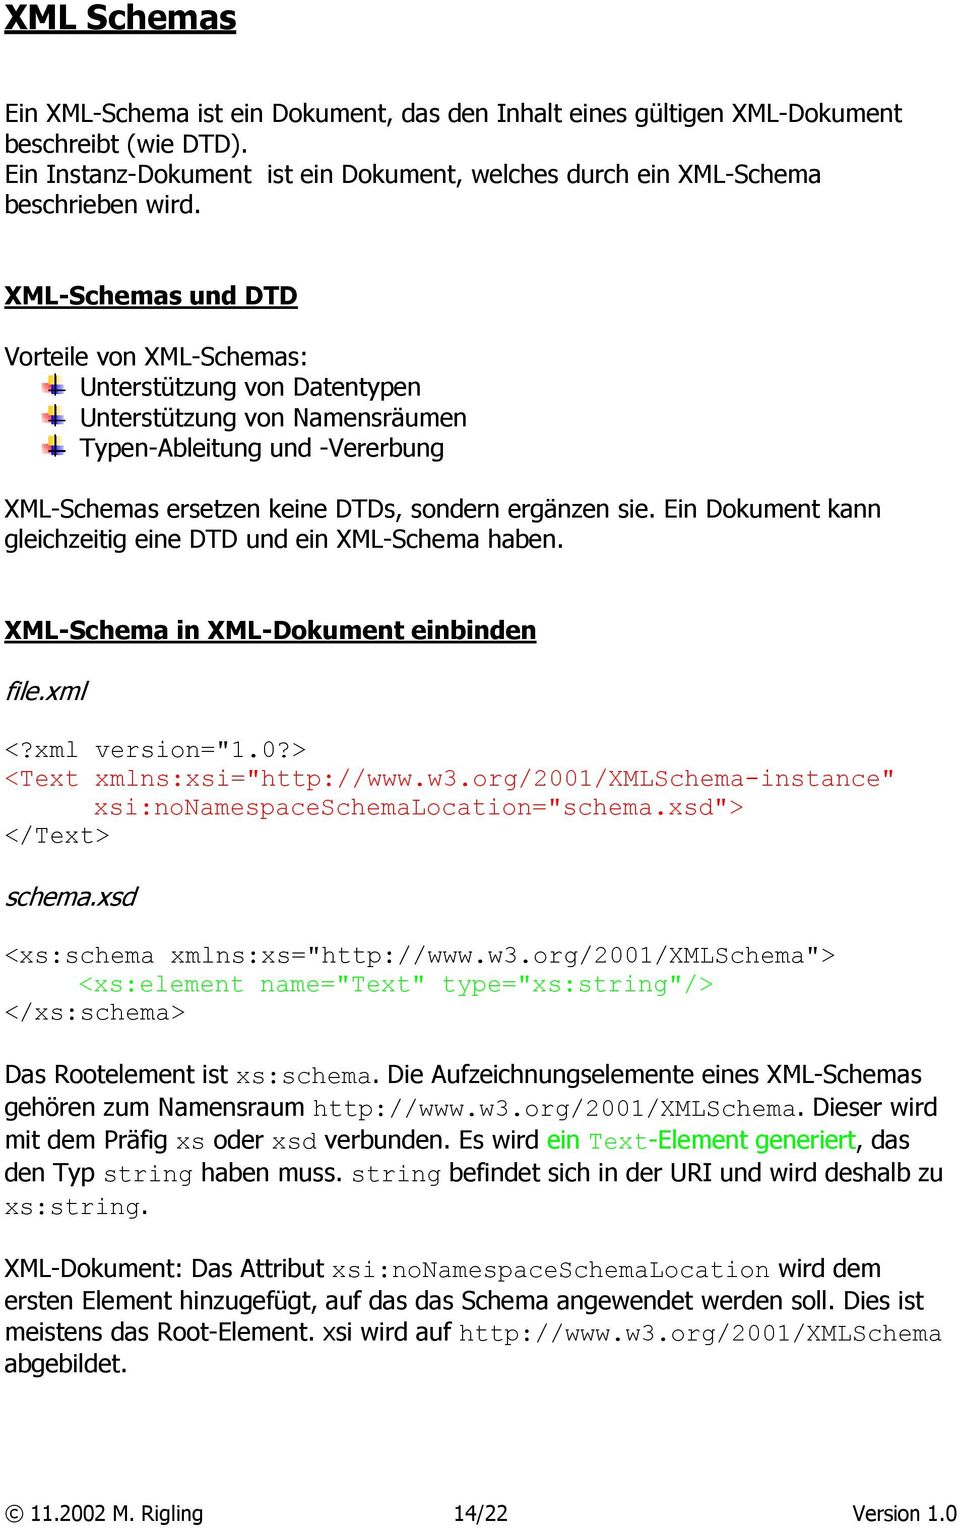 Ein Dokument kann gleichzeitig eine DTD und ein XML-Schema haben. XML-Schema in XML-Dokument einbinden file.xml <?xml version="1.0?> <Text xmlns:xsi="http://www.w3.